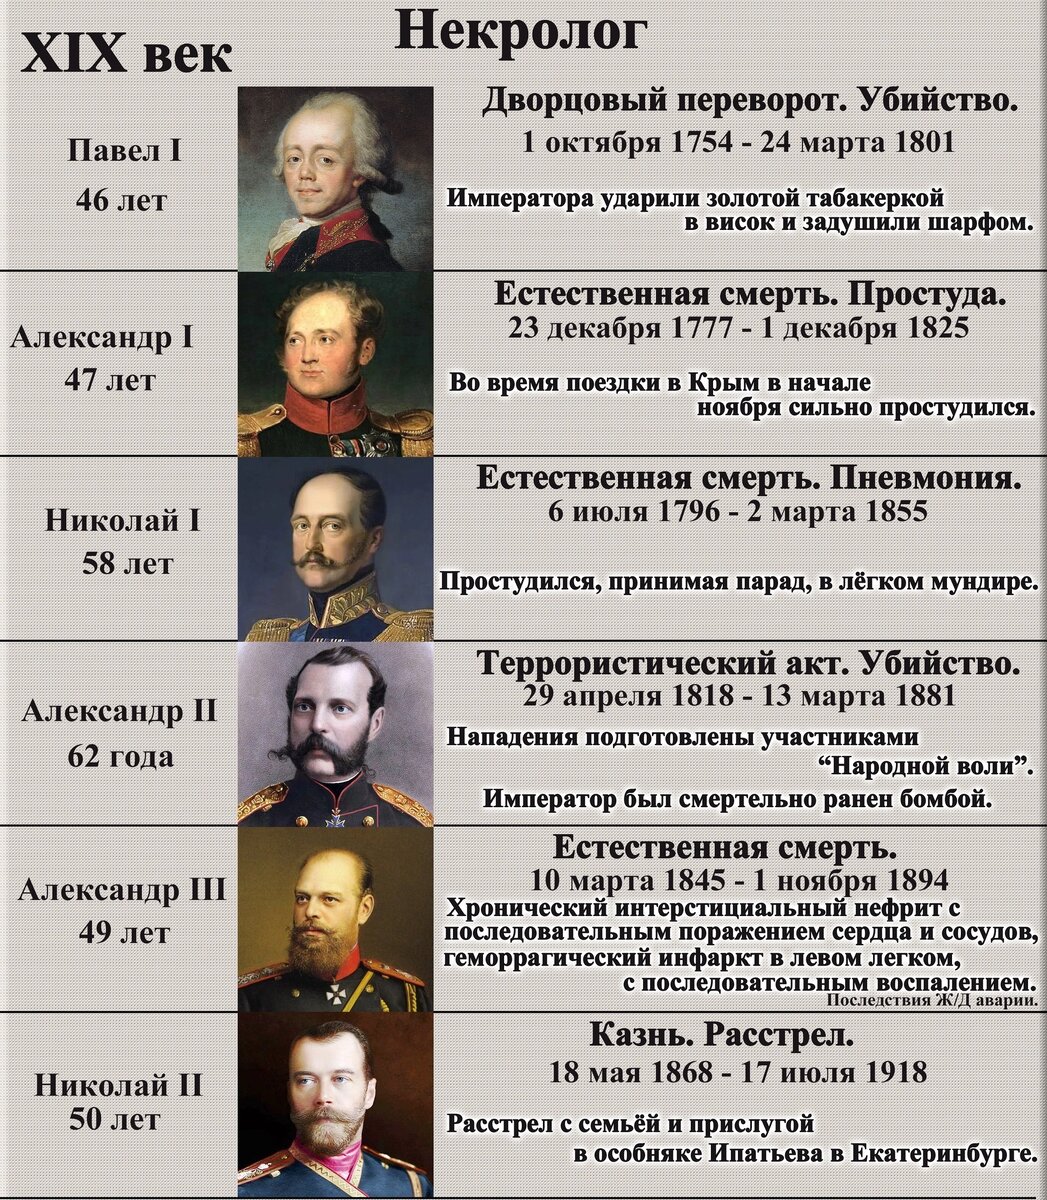 Самая страшная смерть из правителей России. Как называли смерти правителей по очереди.